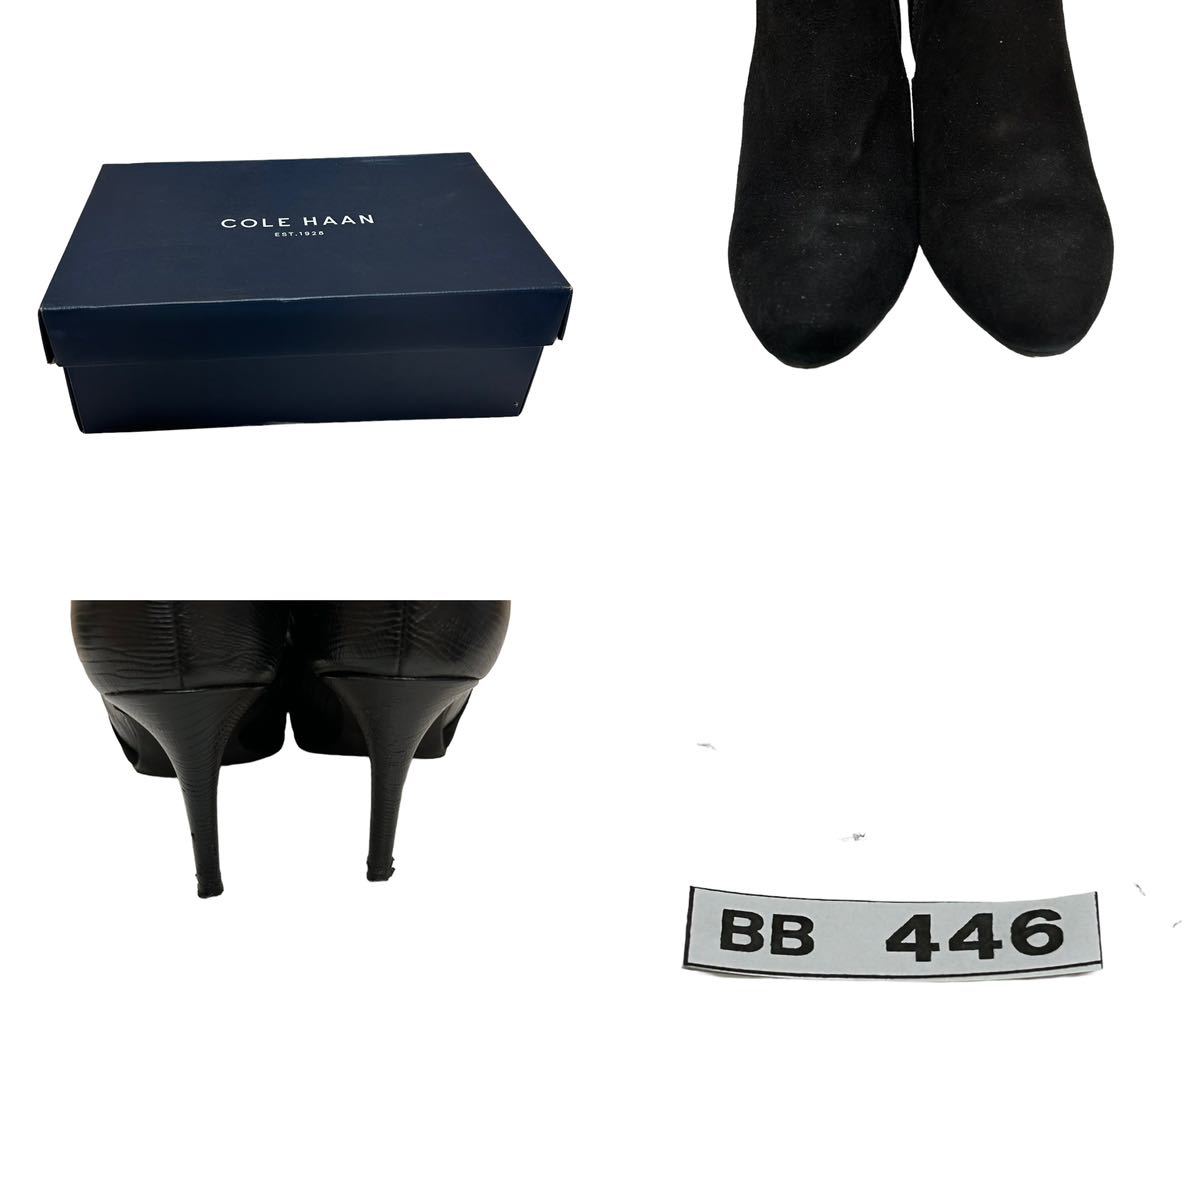 BB446B COLE HAAN Cole Haan женский ботиночки короткие сапоги 5.5B примерно 22.5cm черный замша с коробкой 